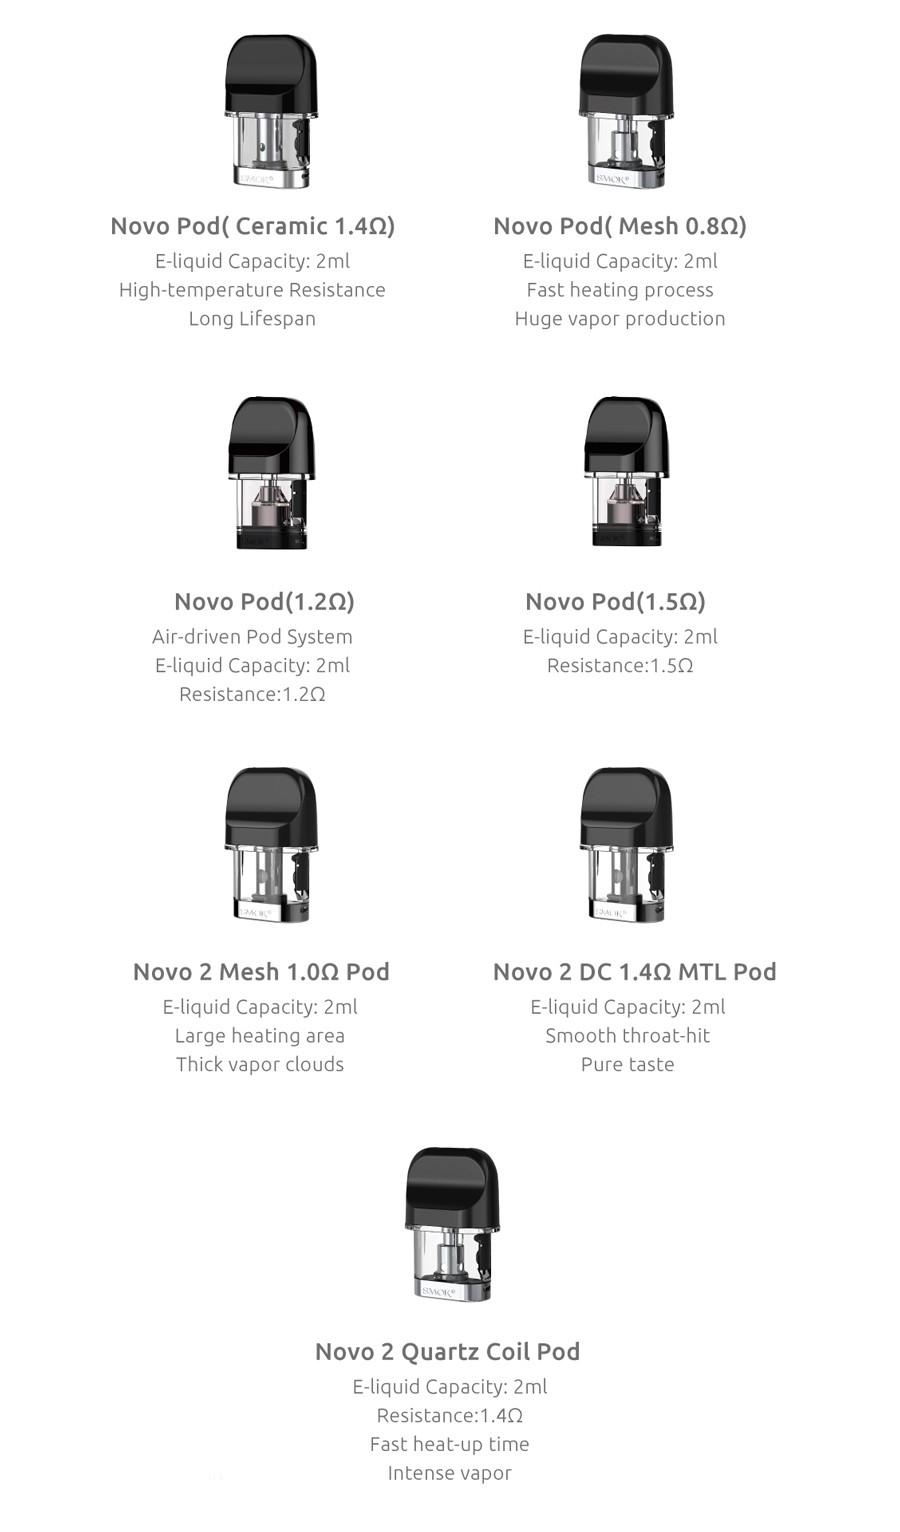 The Novo 2 utilises the original Novo pods as well as newly designed Novo 2 pods.